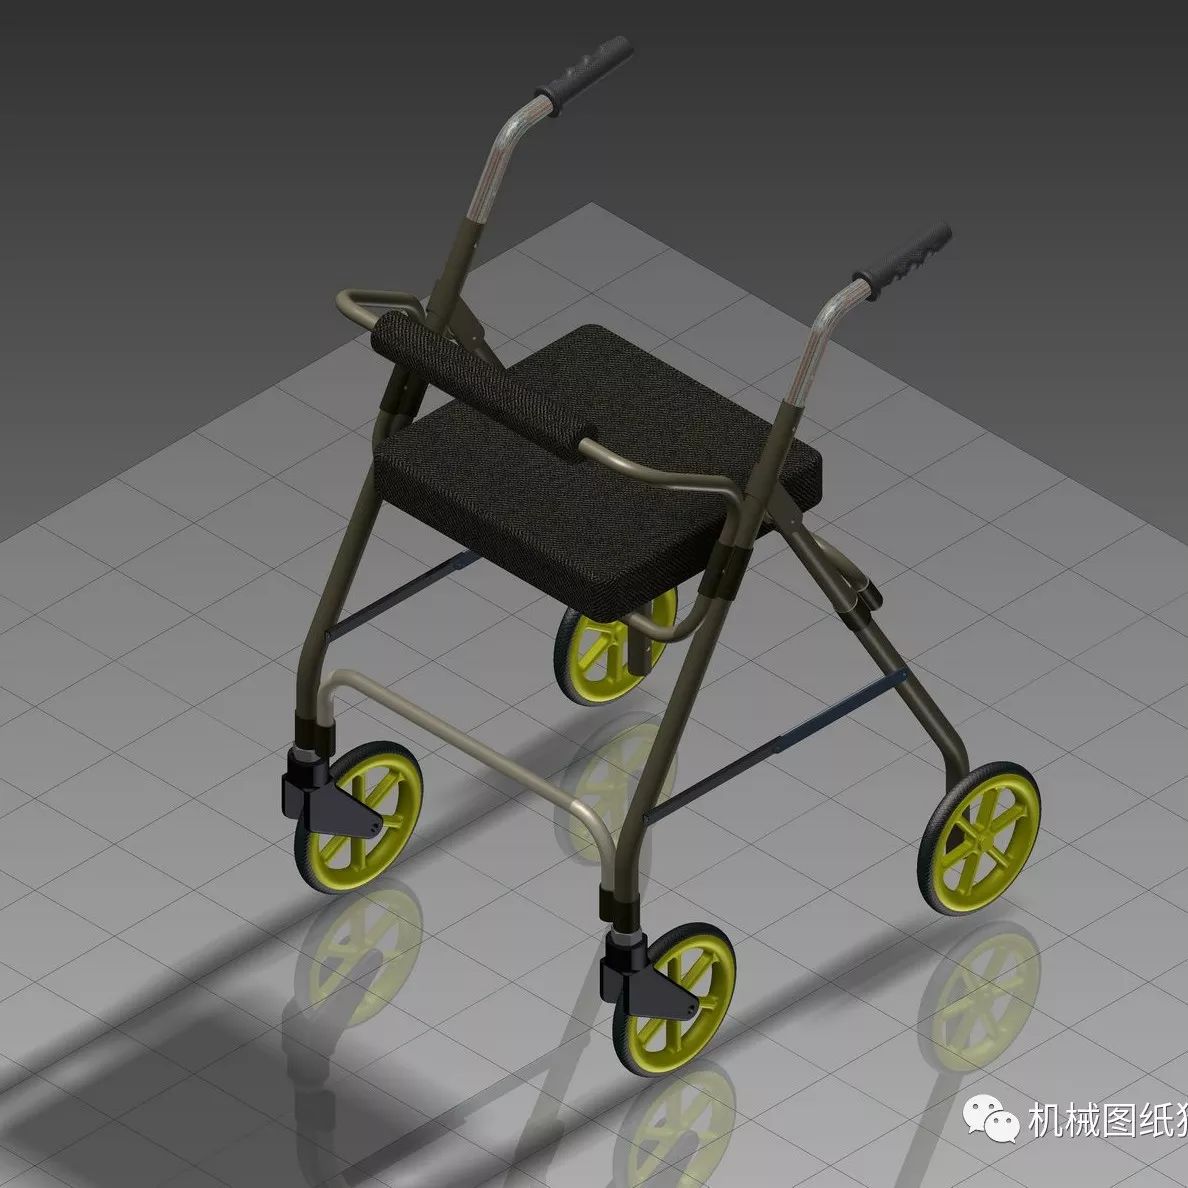 【医疗器械】医疗助步车助行架3D模型图纸 INVENTOR设计